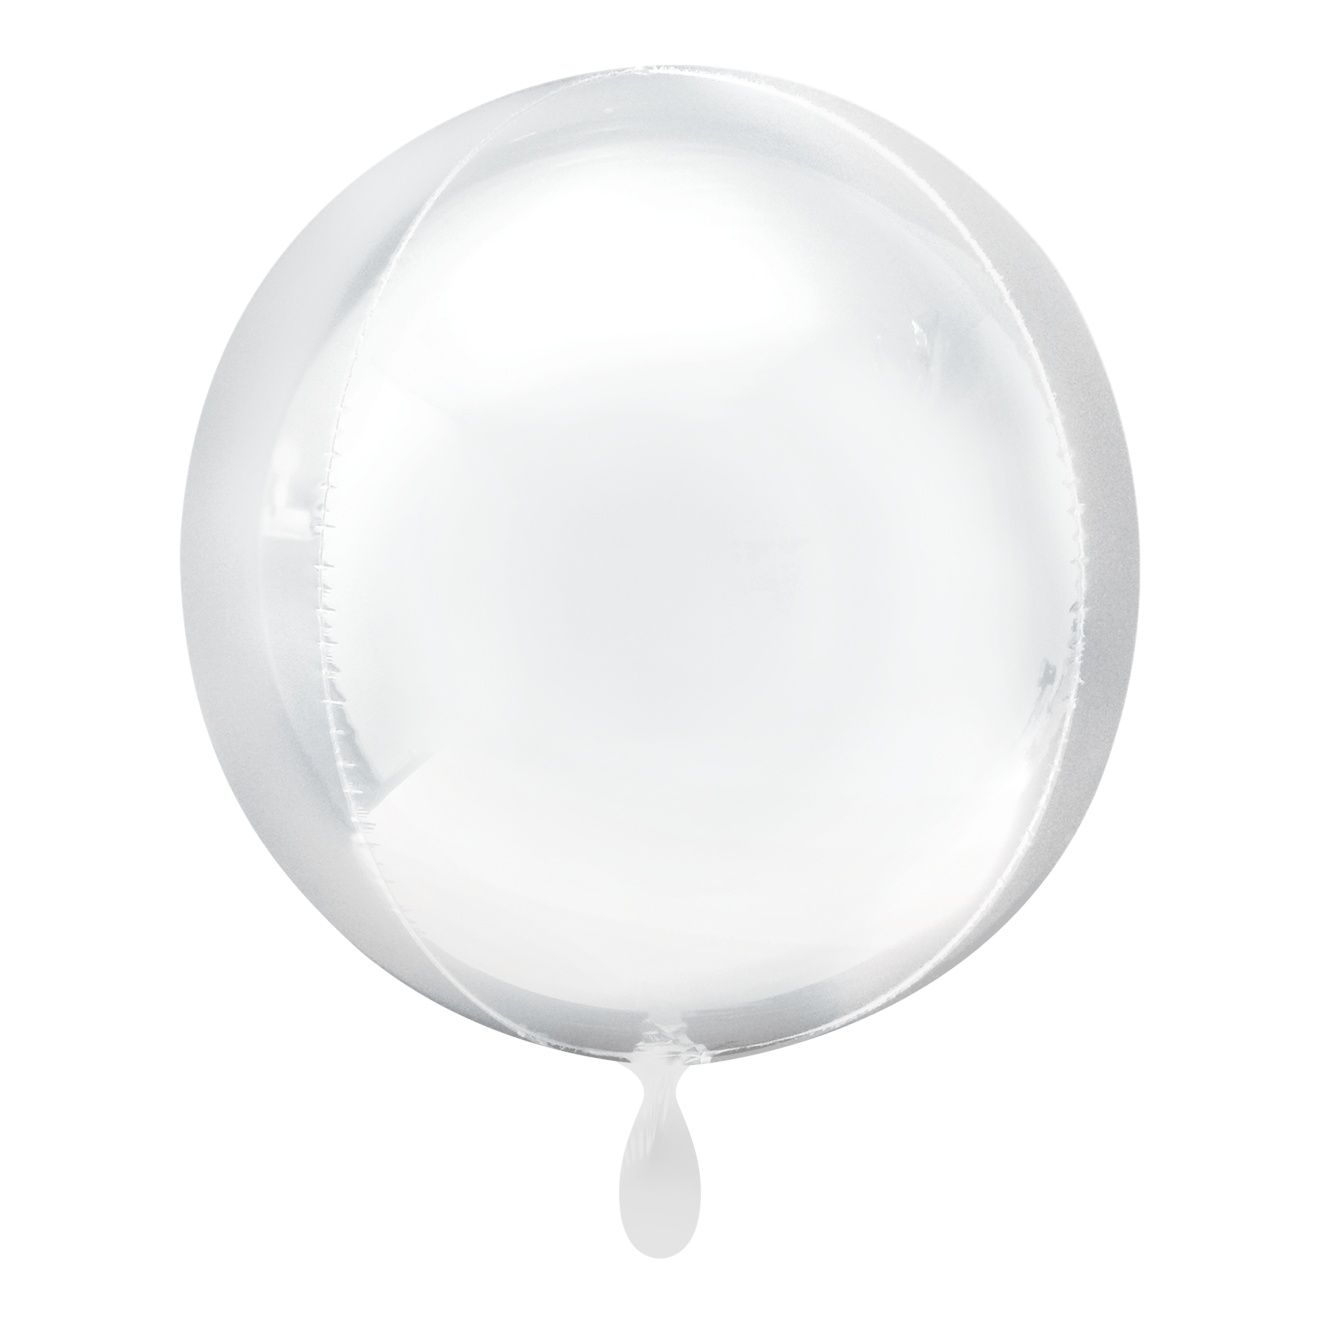 1 Balloon - Orbz® - Weiß